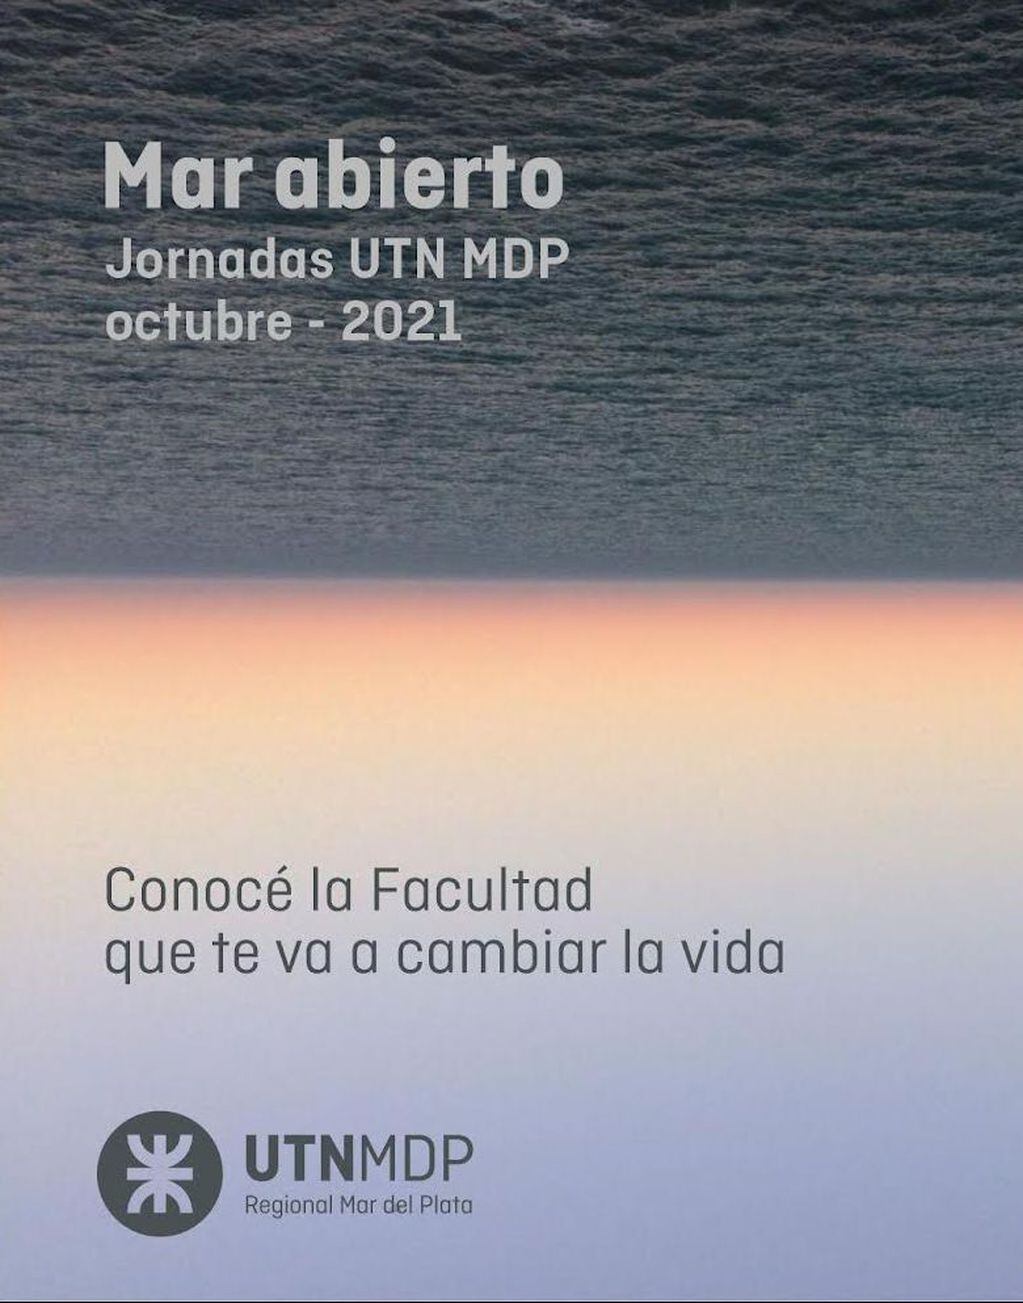 Será una serie de charlas y conferencias que organiza la Universidad Tecnológica Nacional de Mar del Plata los días 6 y 7 de octubre.